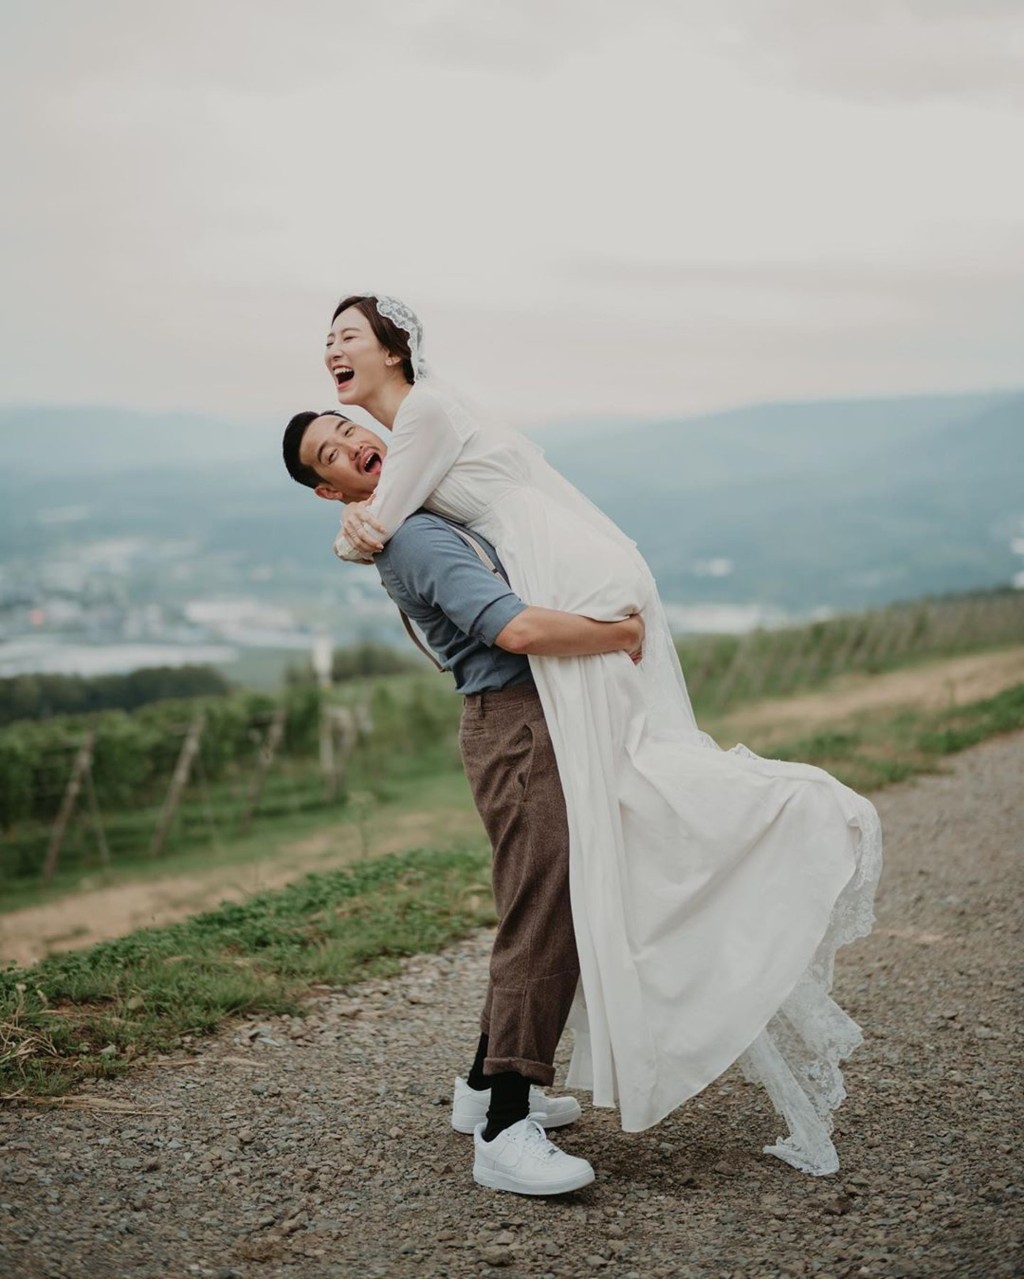 王敏奕于2019年与曾国祥结婚。